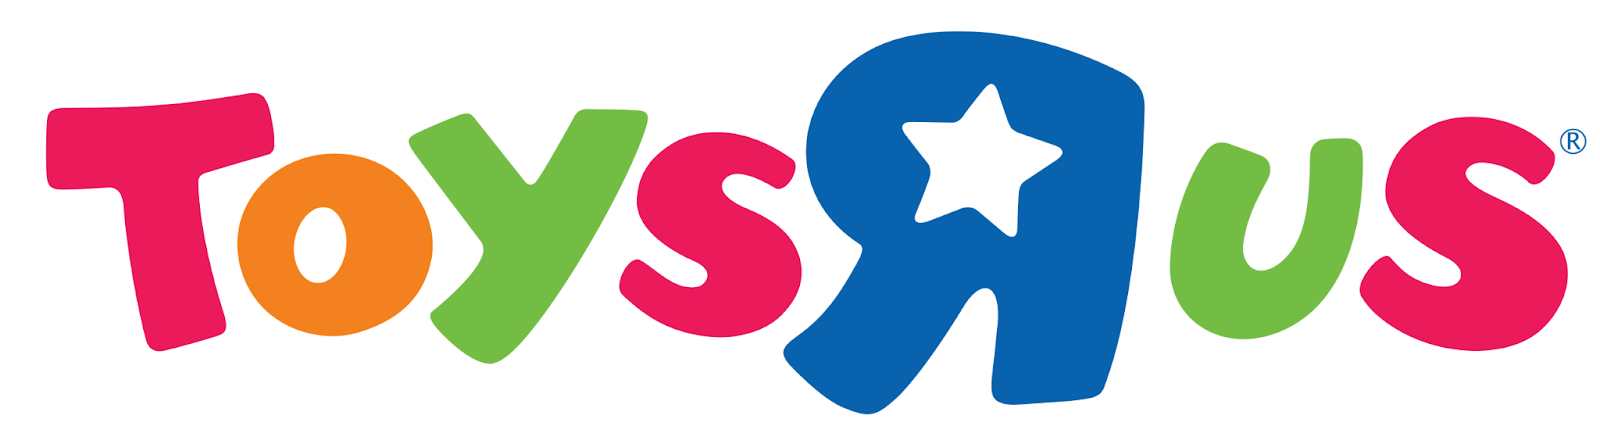 Logo de Toys R us